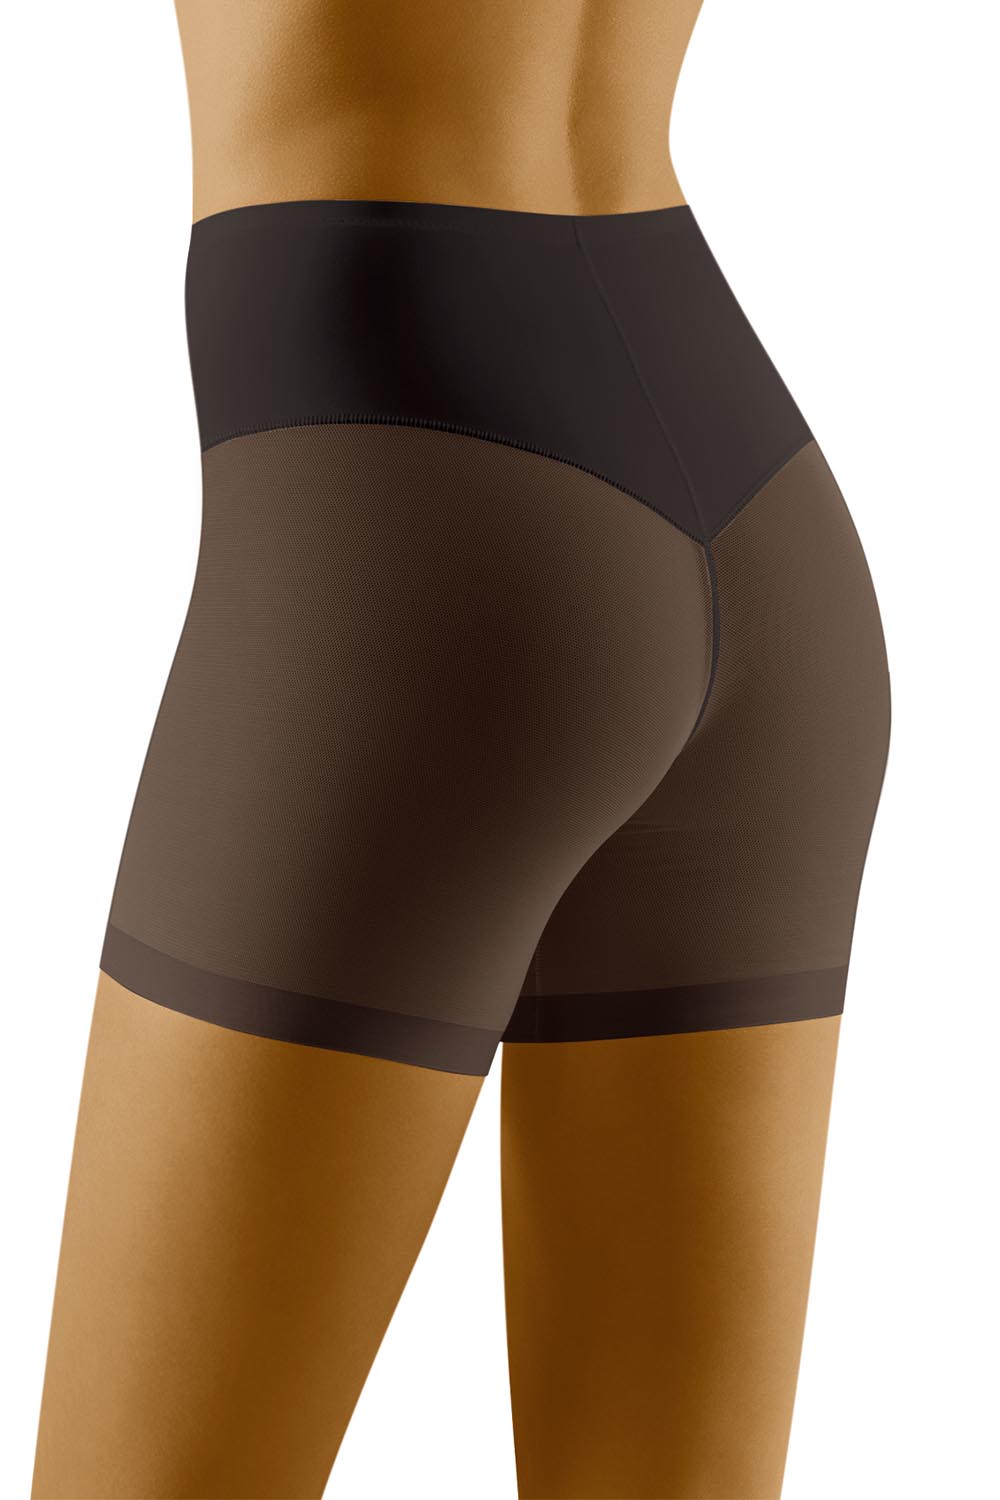 Panties model 123508 Wolbar black Ladies